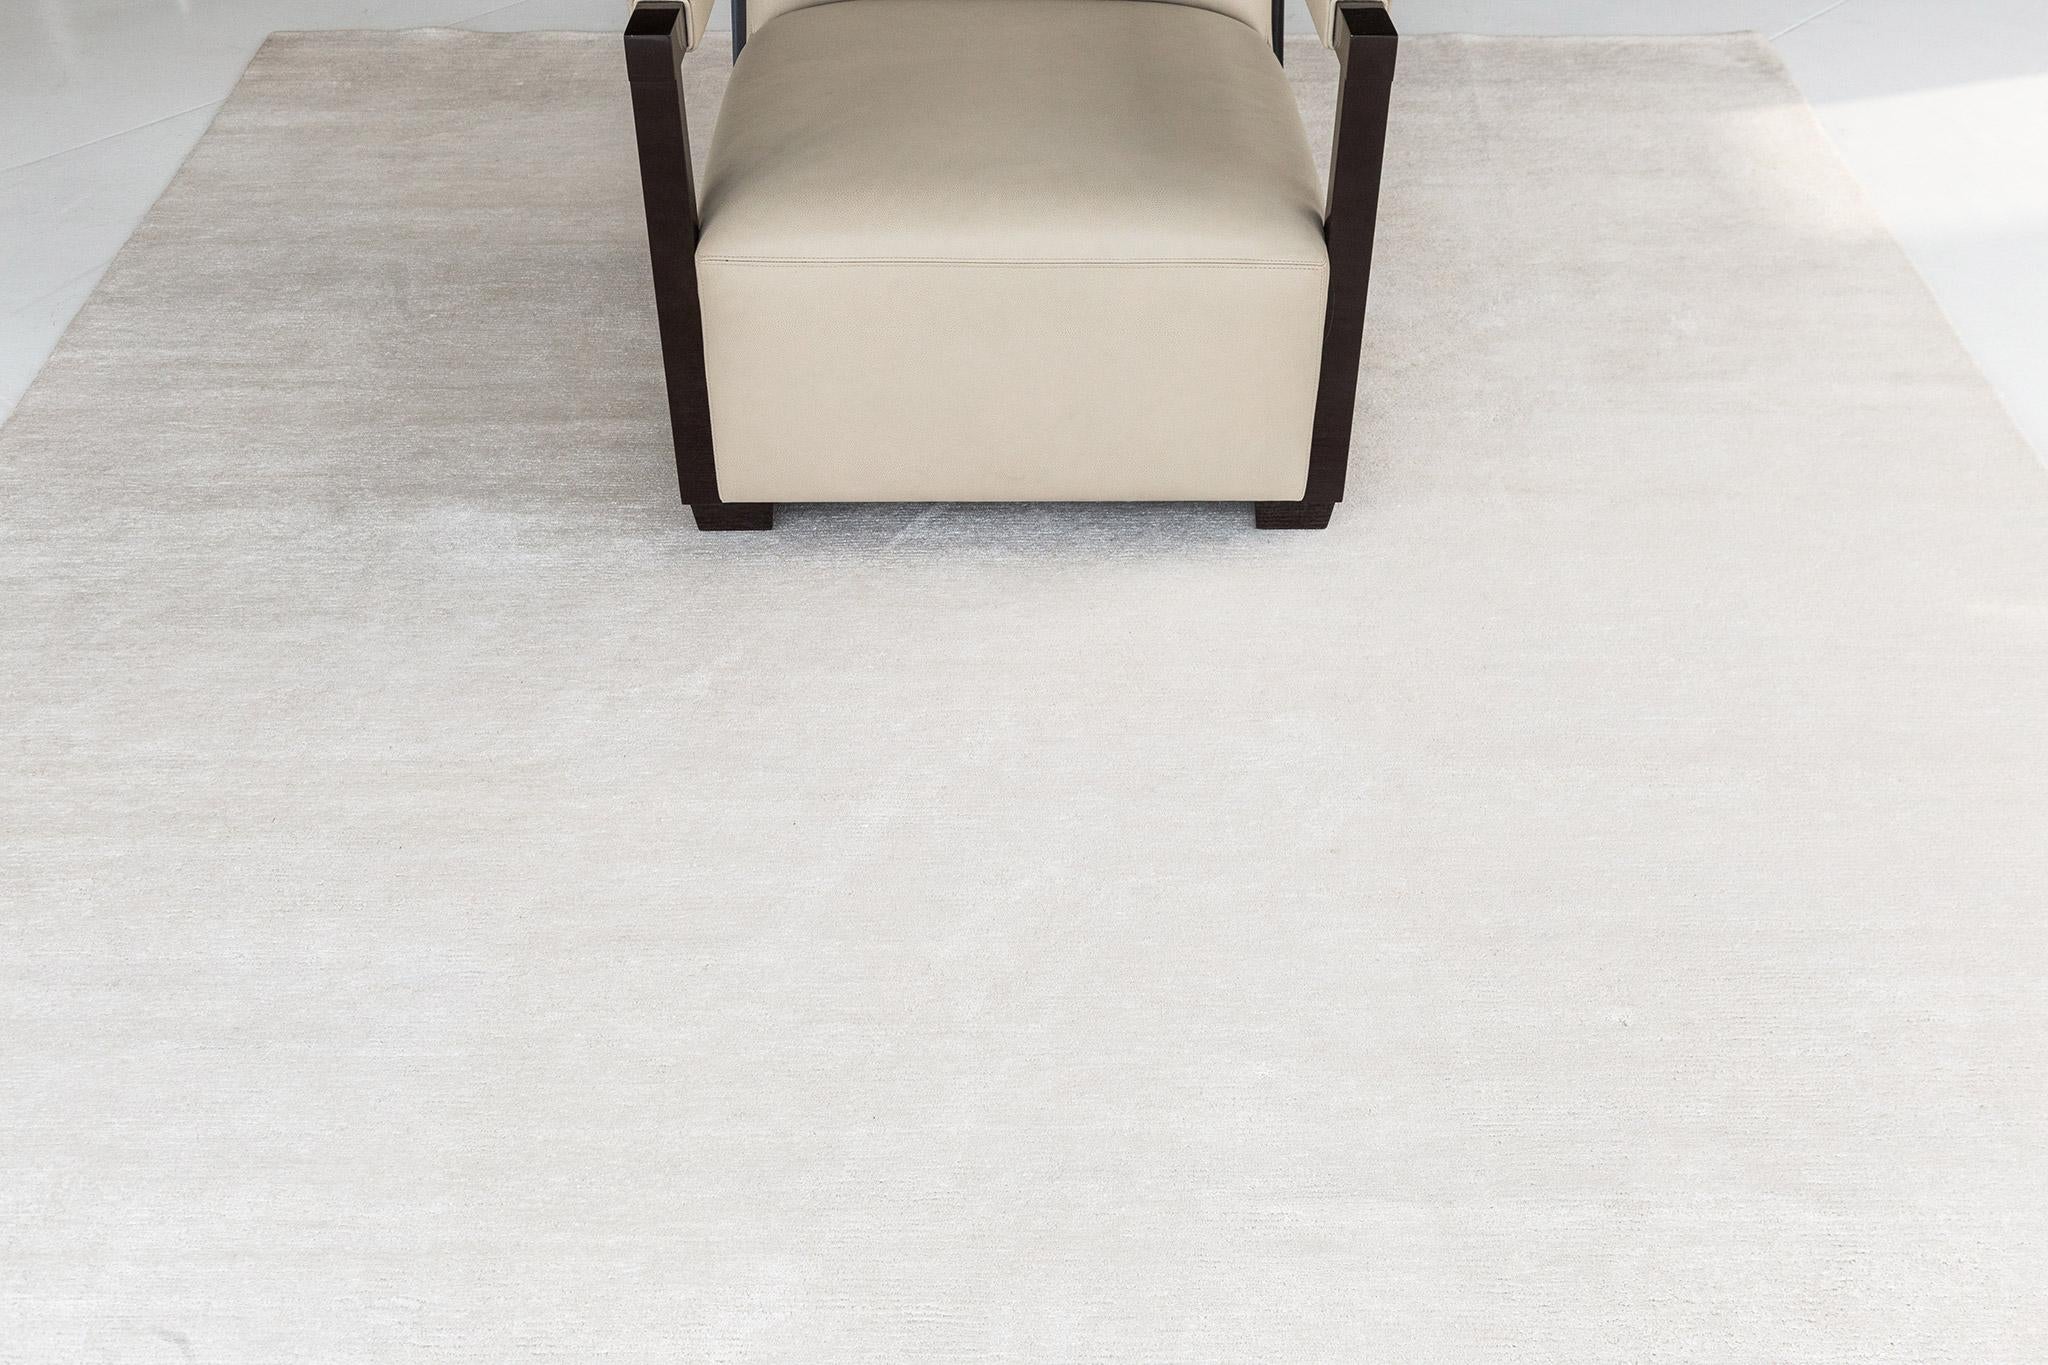 Dara' est un tapis en soie de bambou solide dans un ton crème parfait. Cette simplicité n'enlève rien à la qualité luxueuse et à la brillance du tapis. Dara est un tapis splendide pour tout espace design.

Numéro de tapis
20290
Taille
7' 9